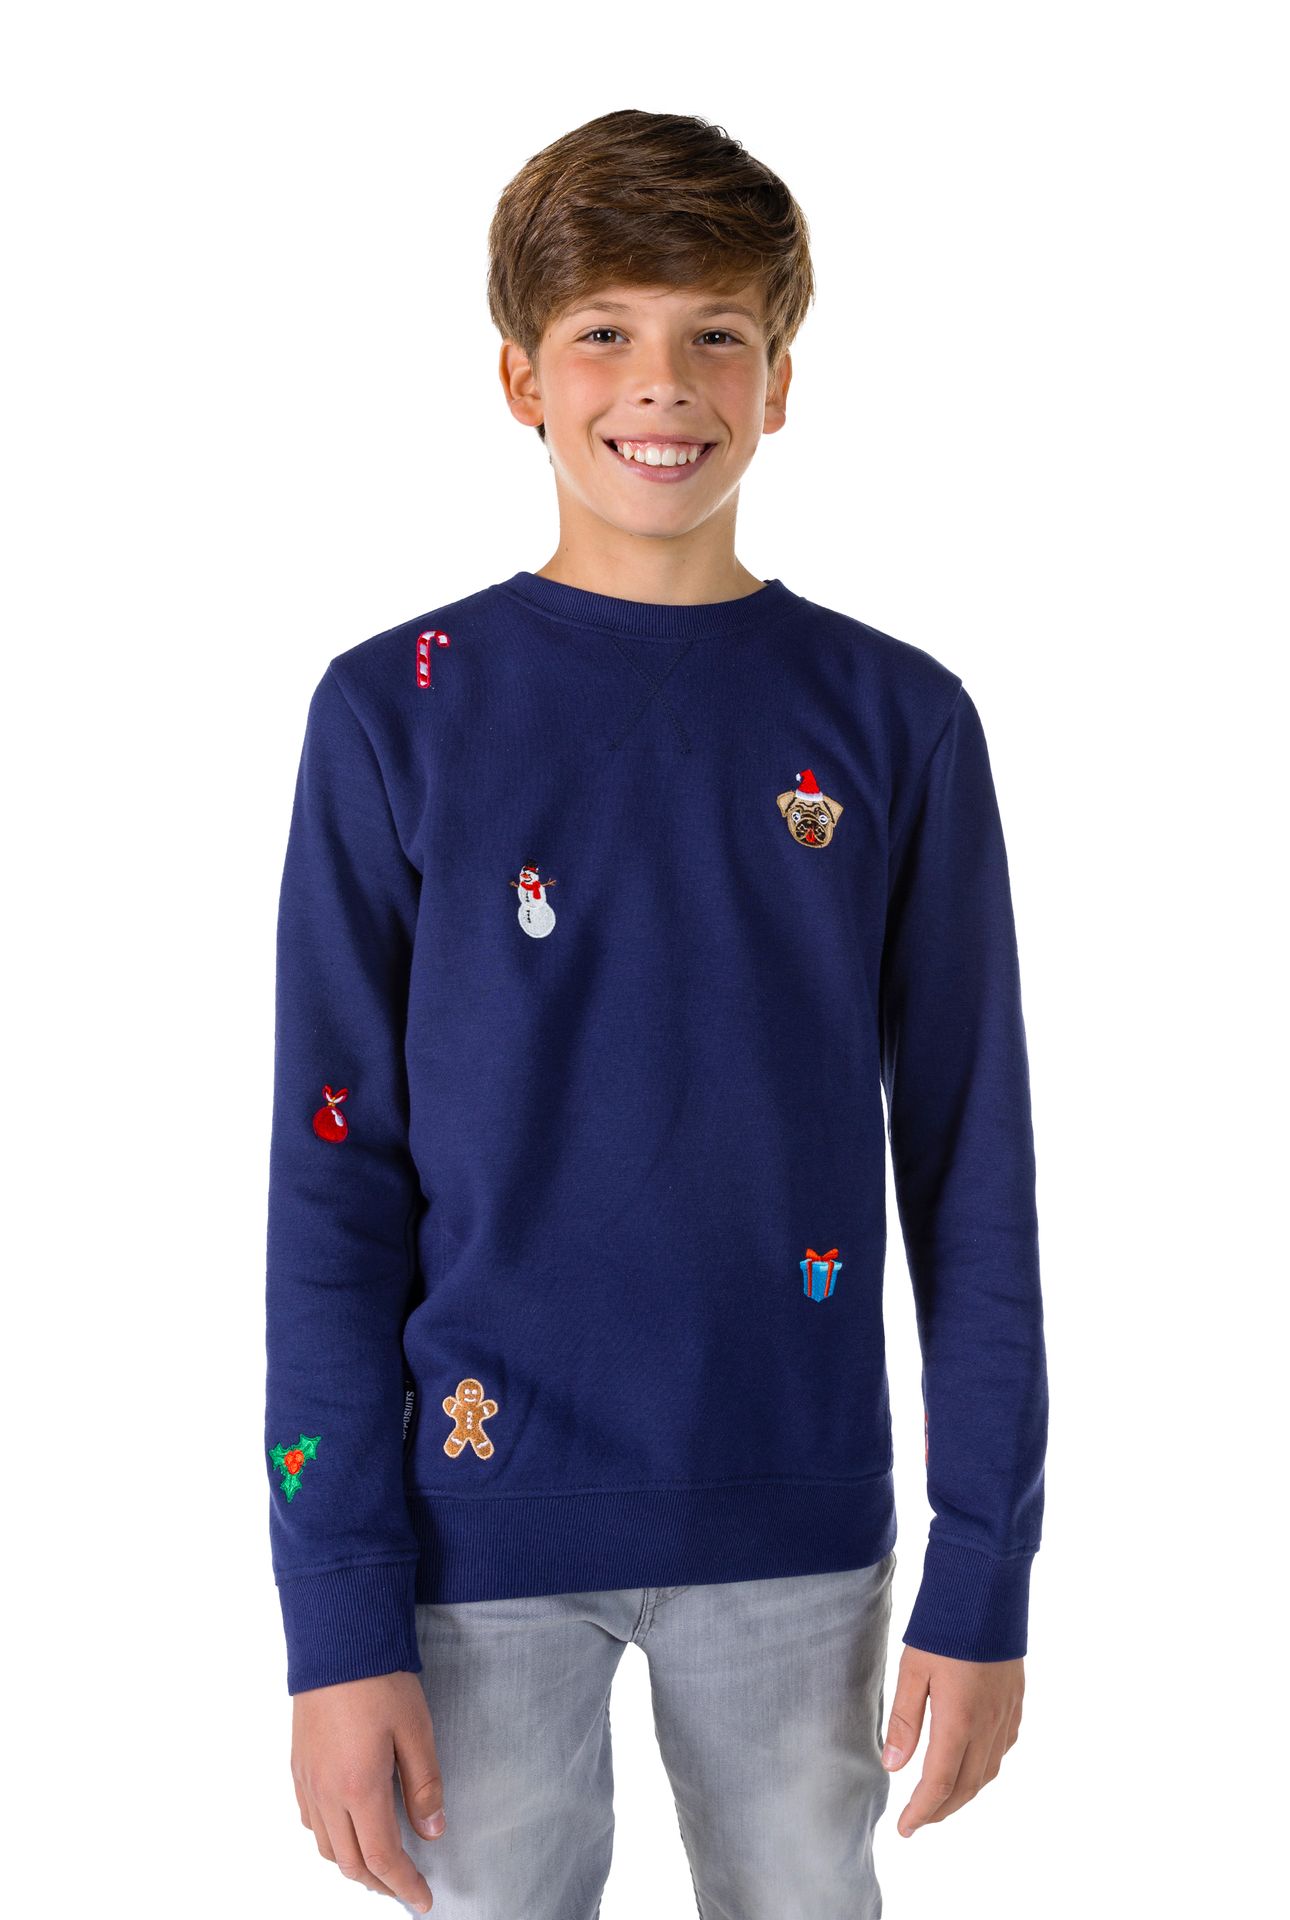 Opposuits Kerstmis - Navy Sweater Tiener Jongens